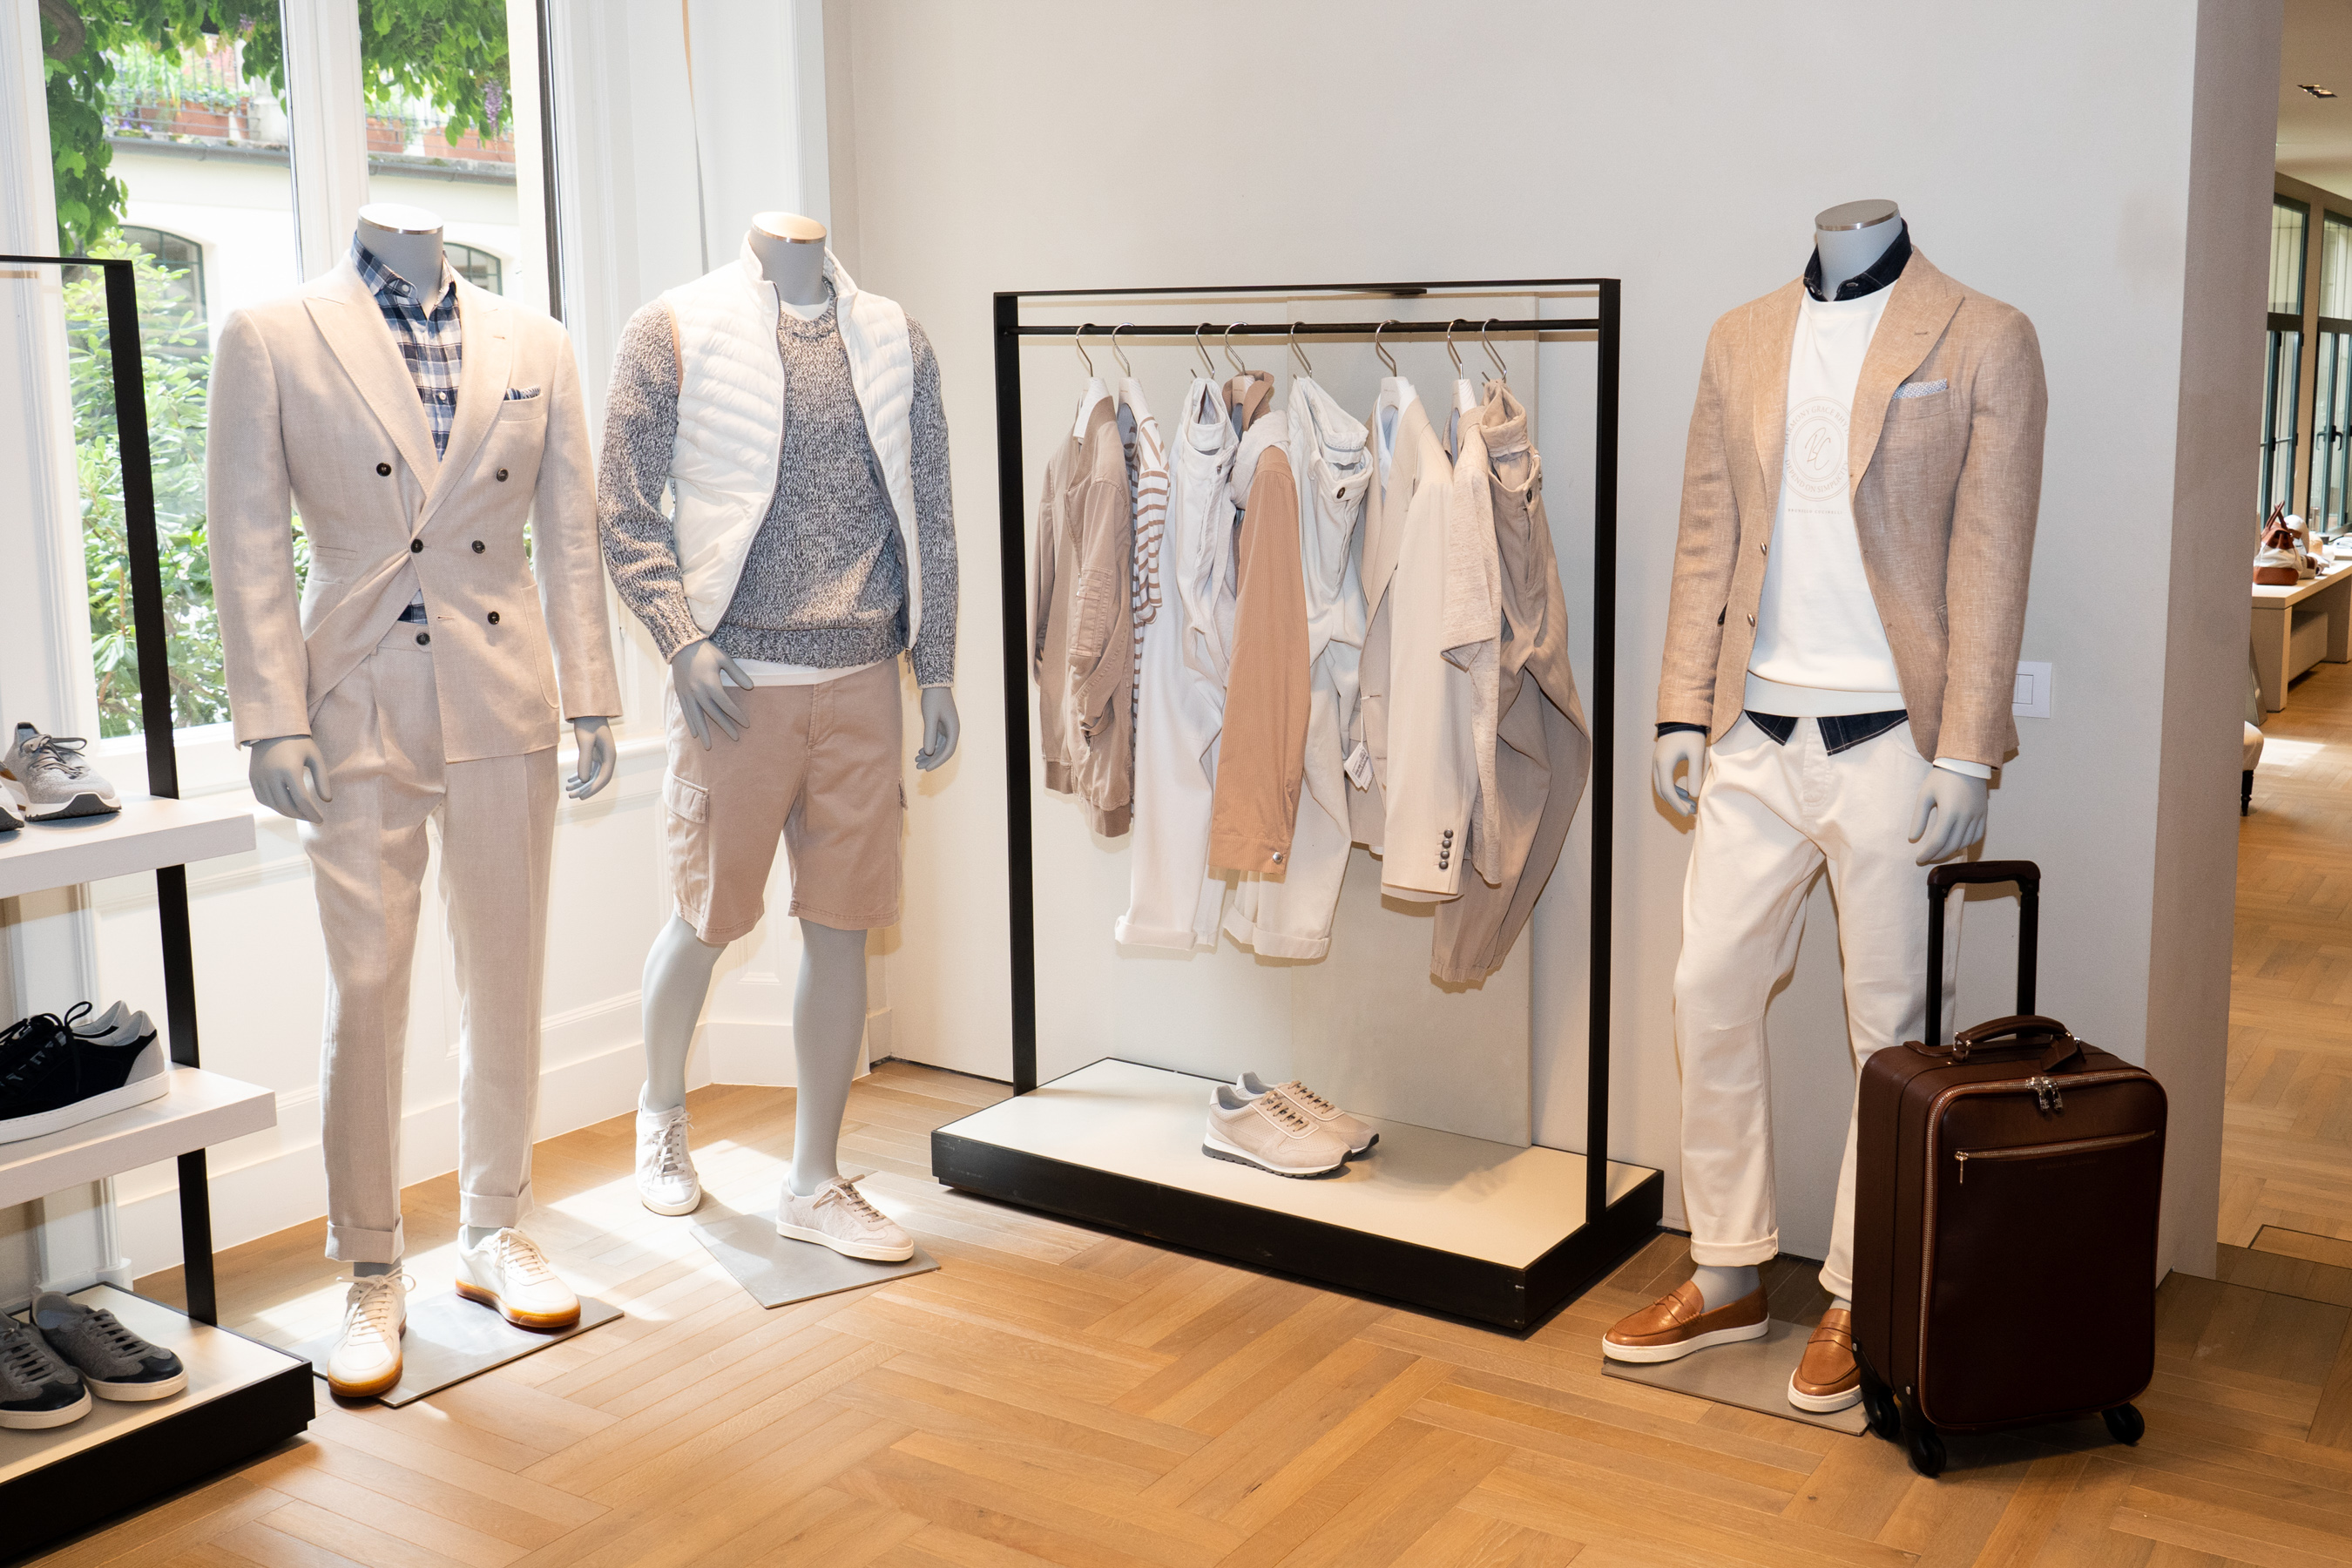 Brunello Cucinelli Unveils New Store Concept – WWD